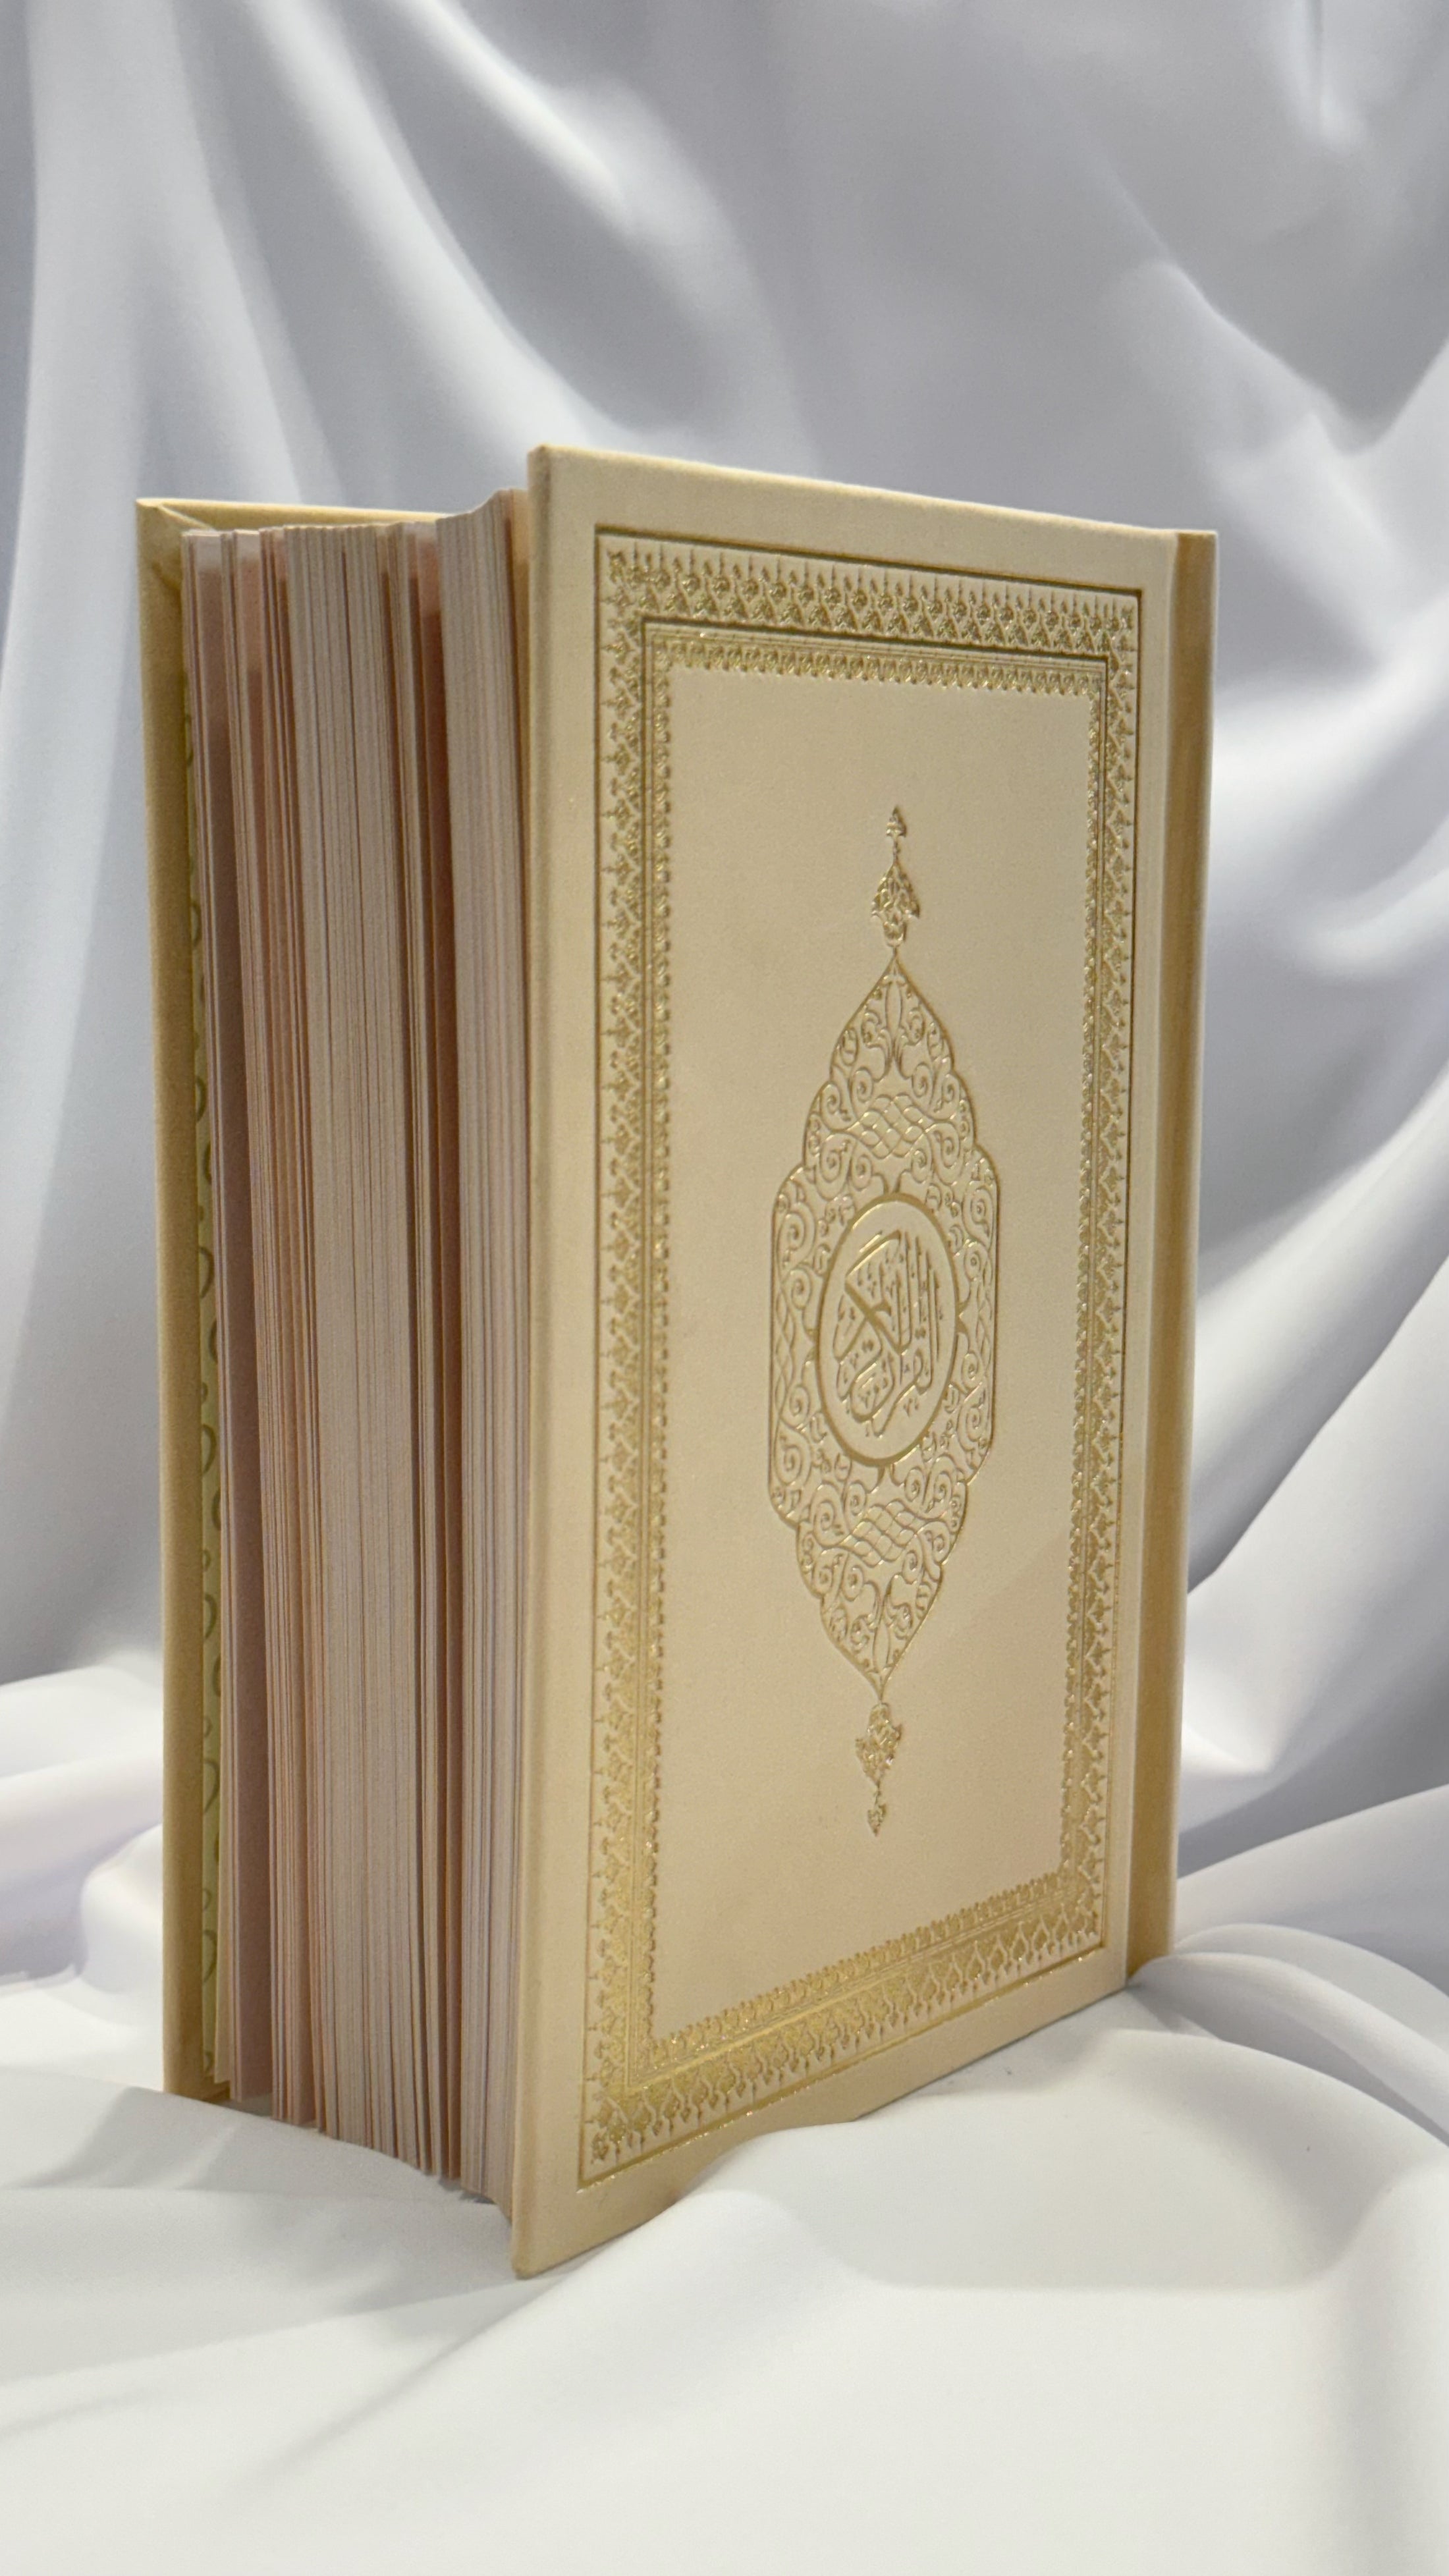 Corano copertina vellutata hafs 14x20 cm